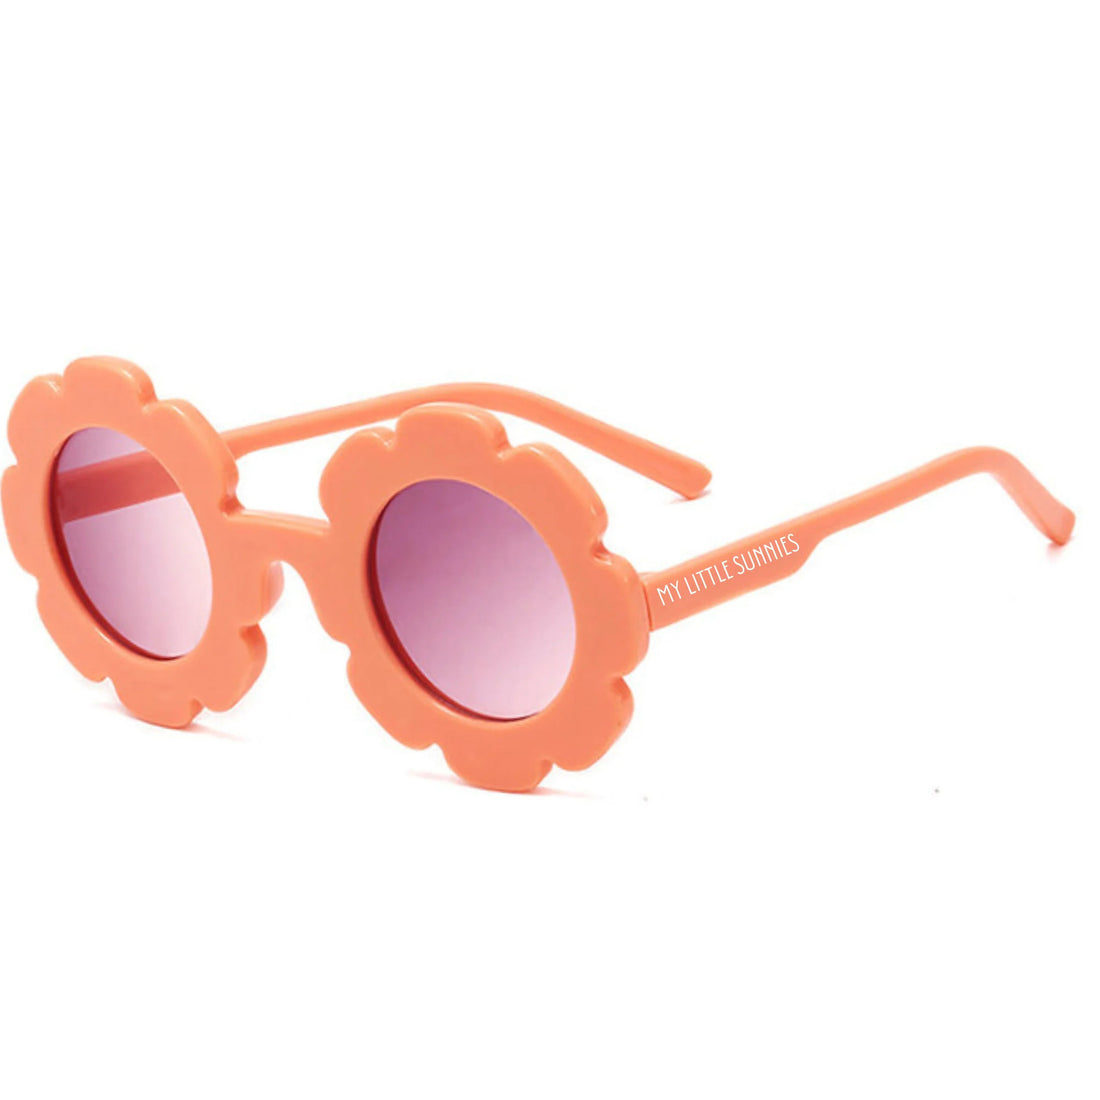 my-little-sunnies-round-flower-sunglasses-peach-myls-roundflower-peach- (1)